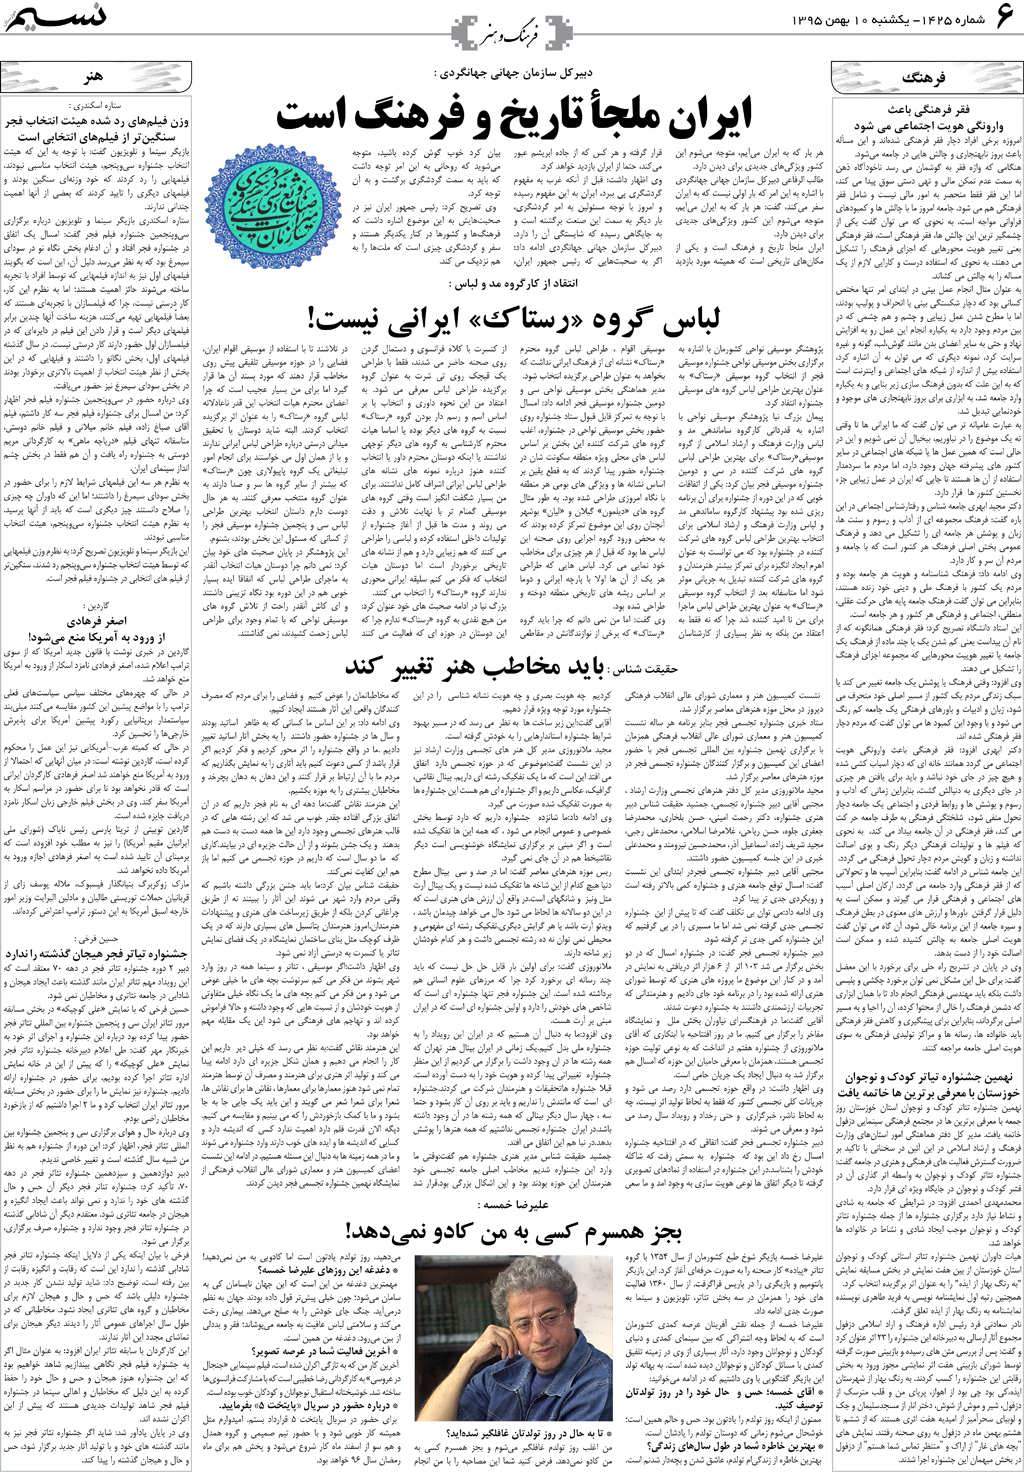 صفحه فرهنگ و هنر روزنامه نسیم شماره 1425